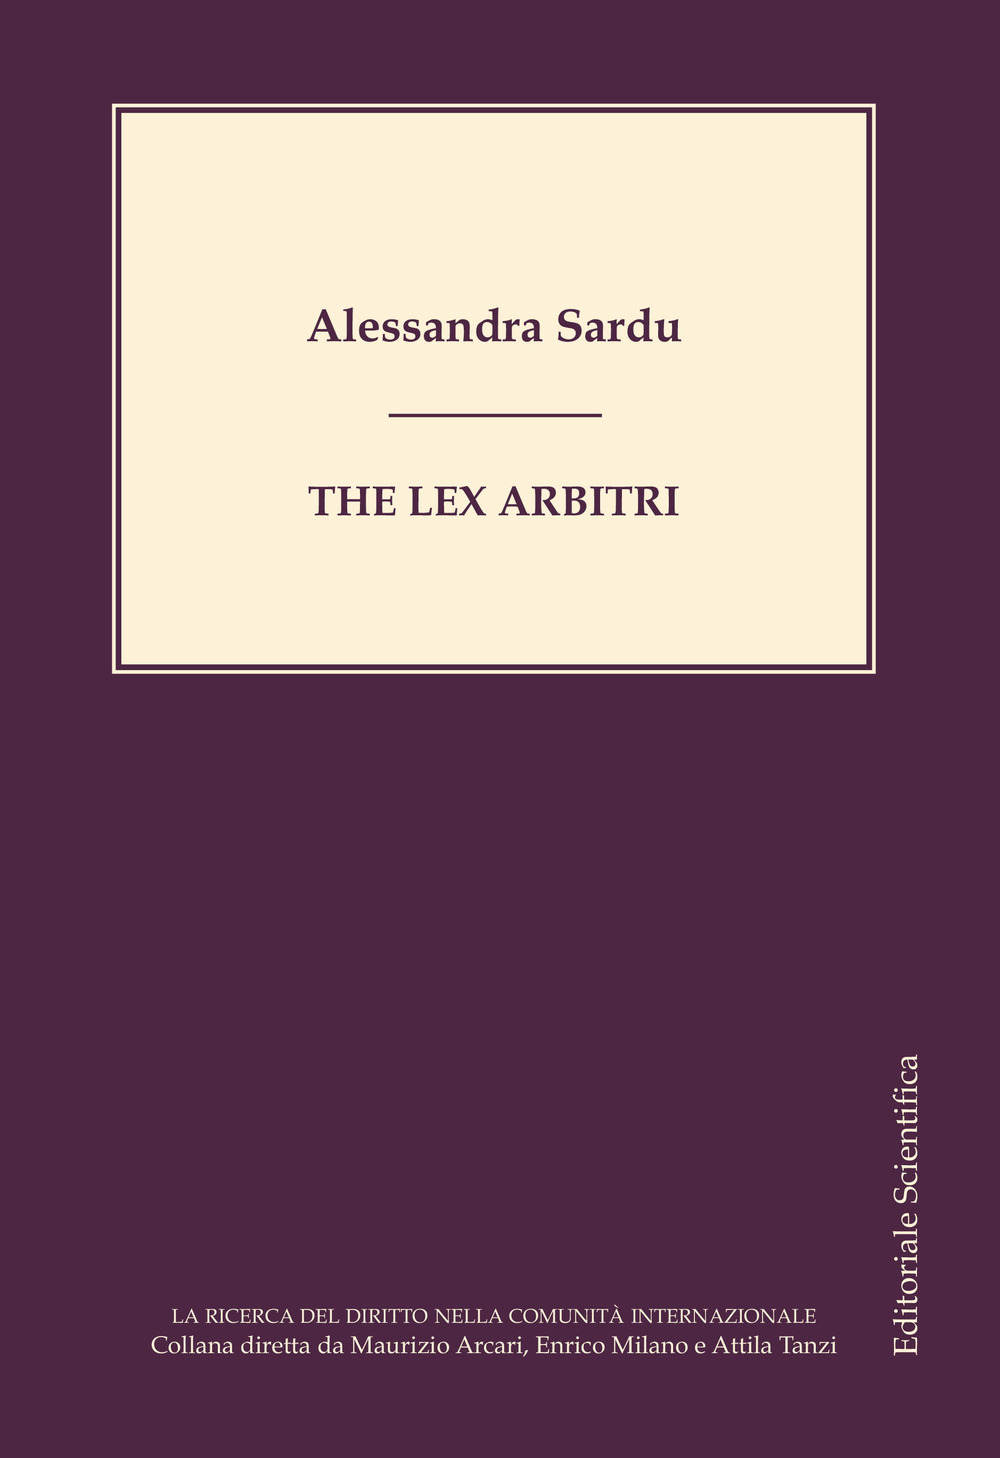 The lex arbitri